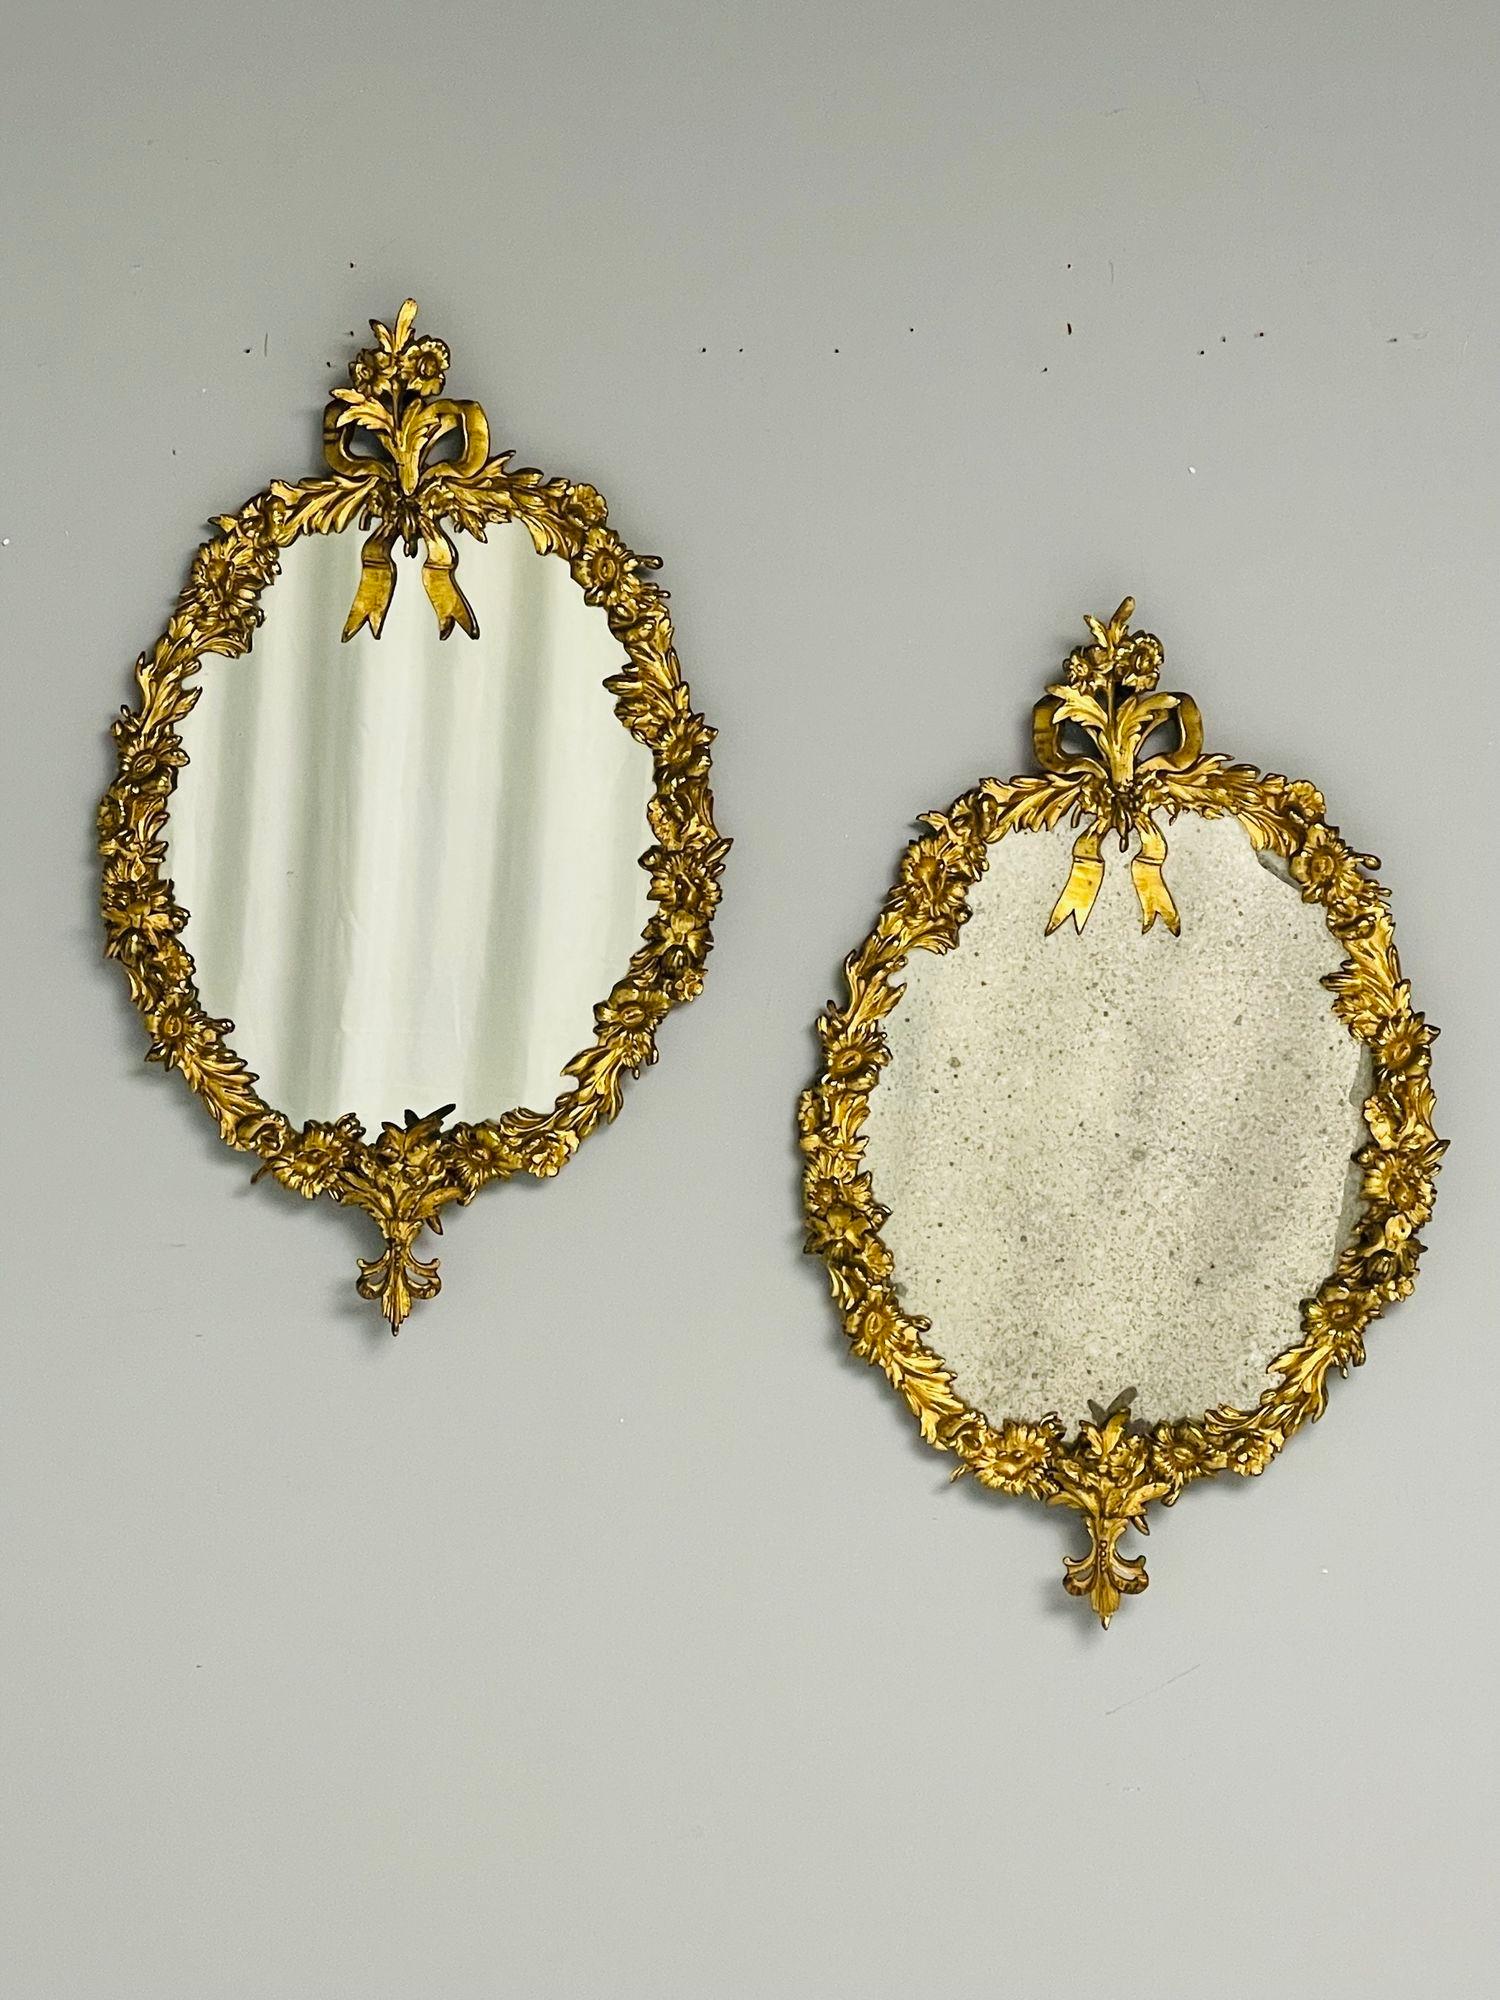 Louis XVI, Petits miroirs ovales, bronze, bois sculpté, motif floral, France, 19e siècle

Chic paire de petits miroirs ovales, chacun lourdement coulé en bronze avec un motif floral et feuillu surmonté d'un ruban. L'un des miroirs conserve son